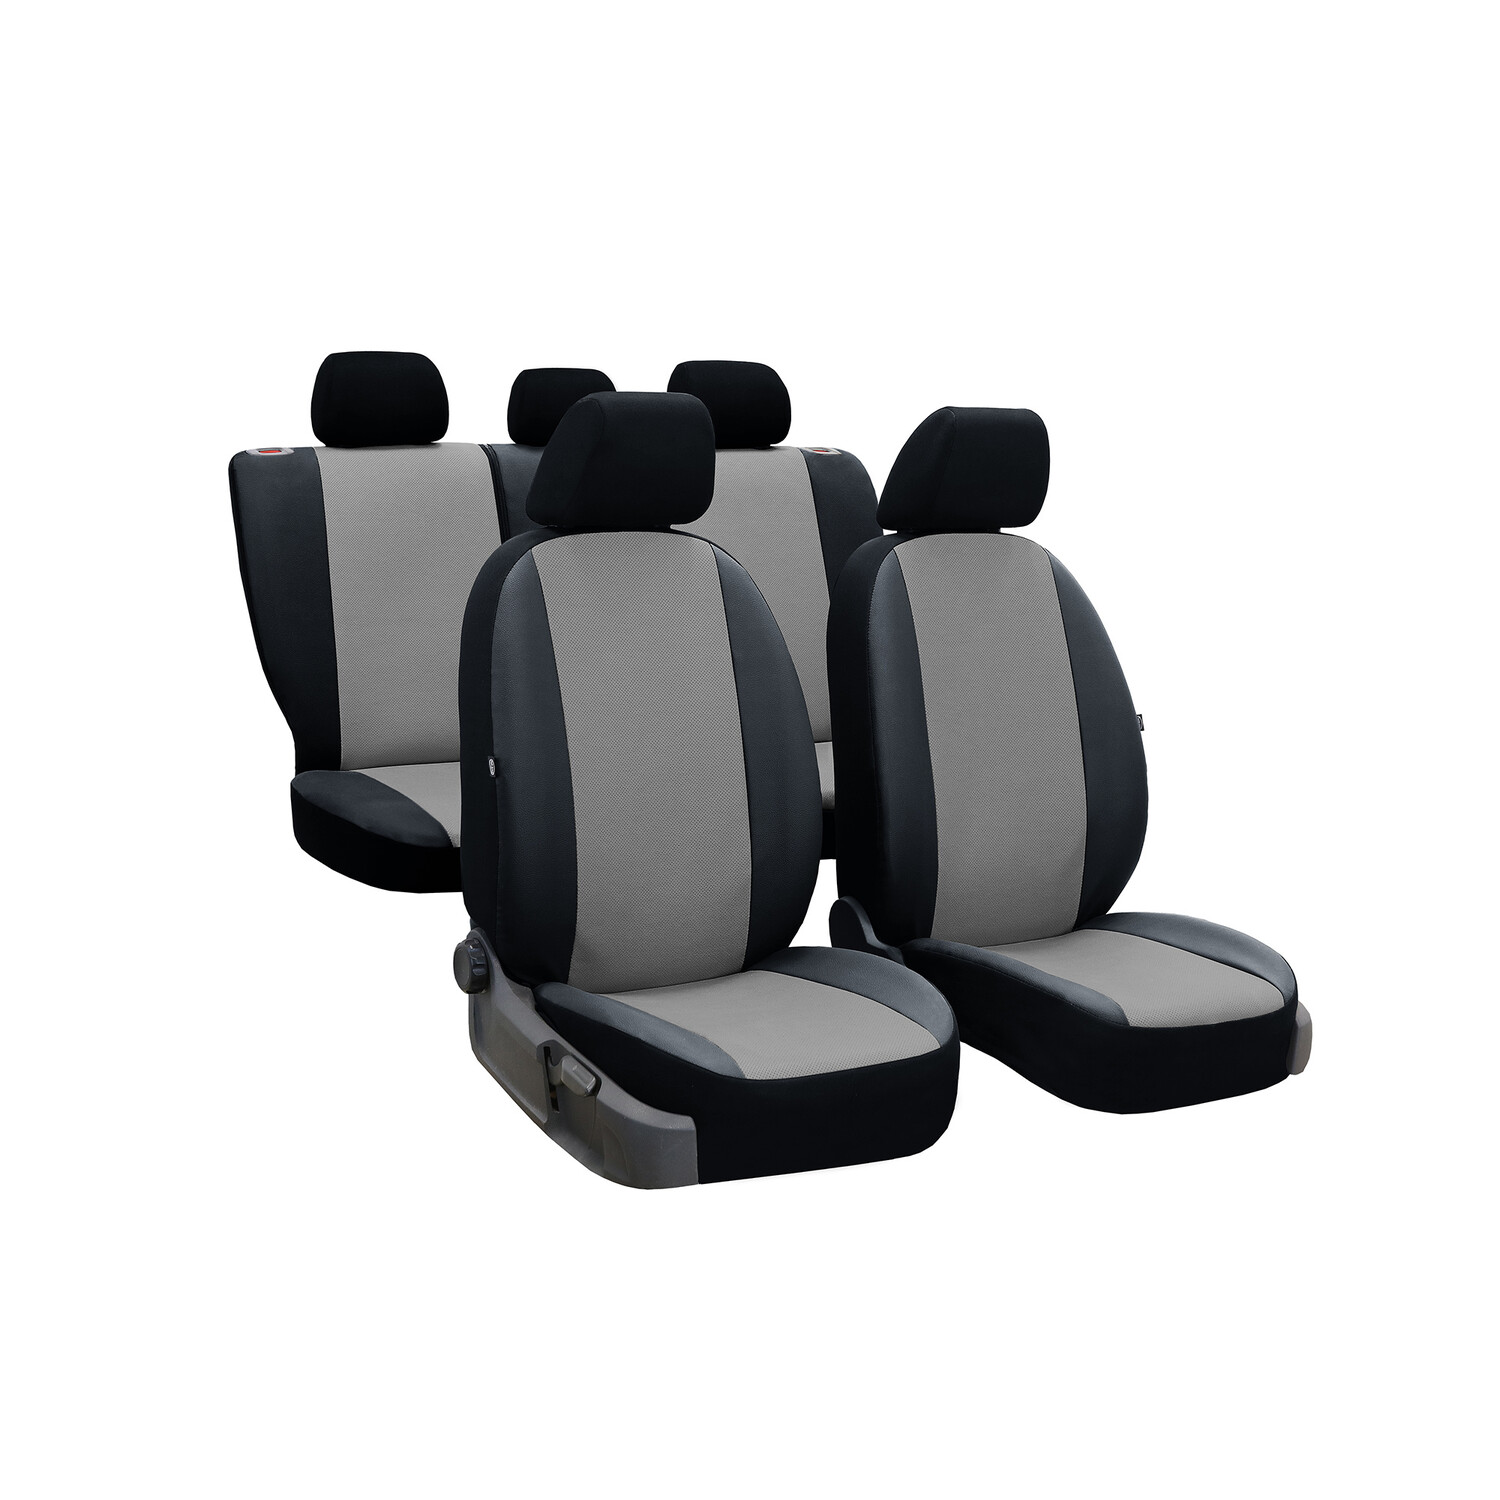 Maßgefertigter Sitzbezug Exclusive für Audi A1 - Maluch Premium Autozubehör